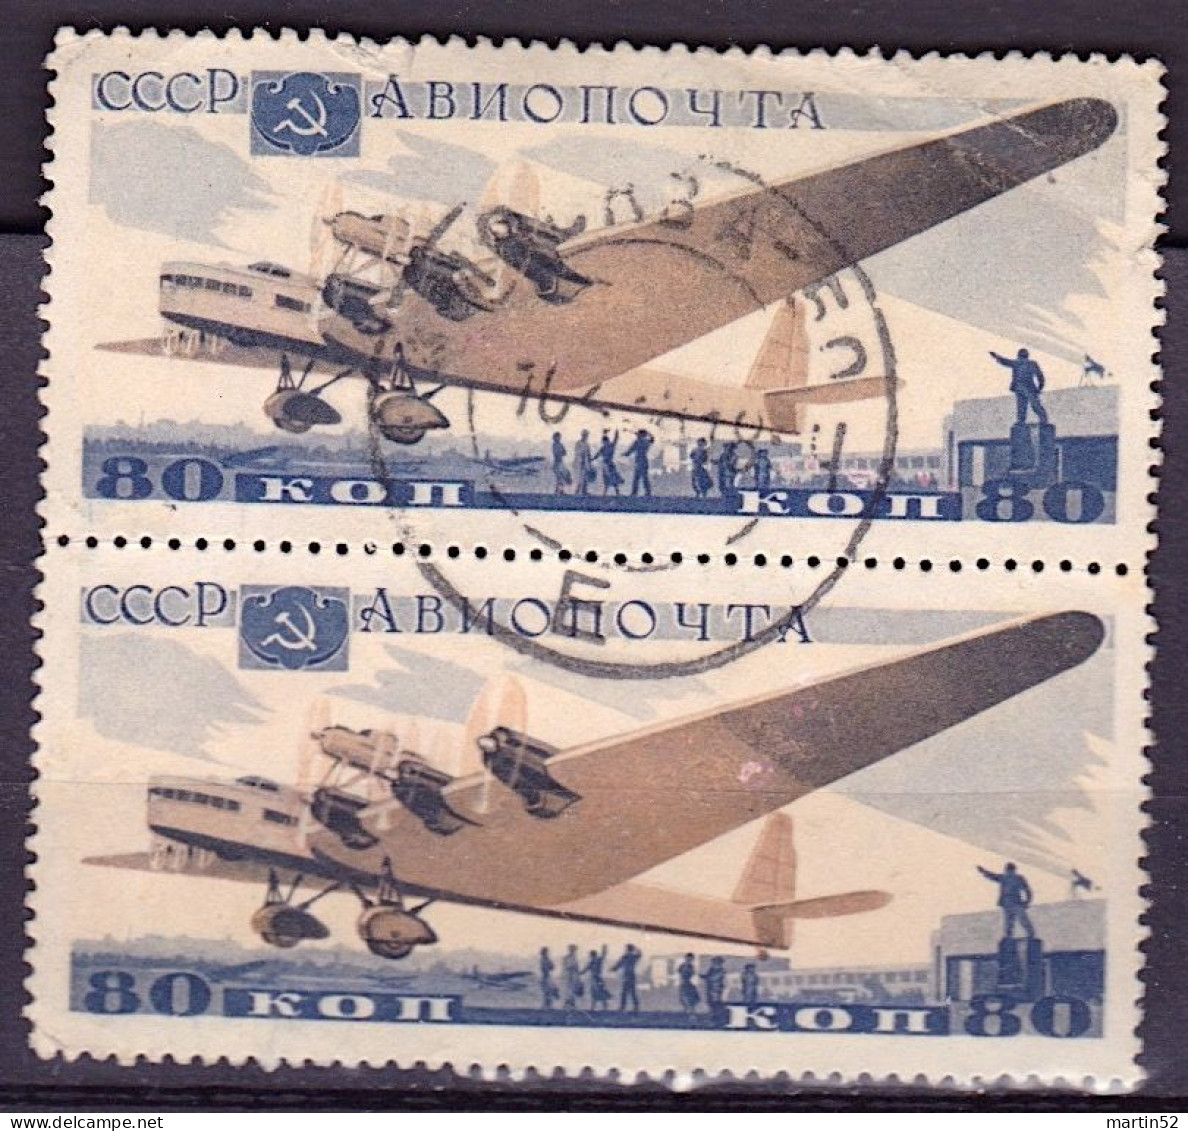 Sowiet-Union CCCP Russie URSS 1937: Antonov ANT-20 (80 Kop) Michel-N° 576 Im Paar Gestempelt Obliterée Used - Gebraucht